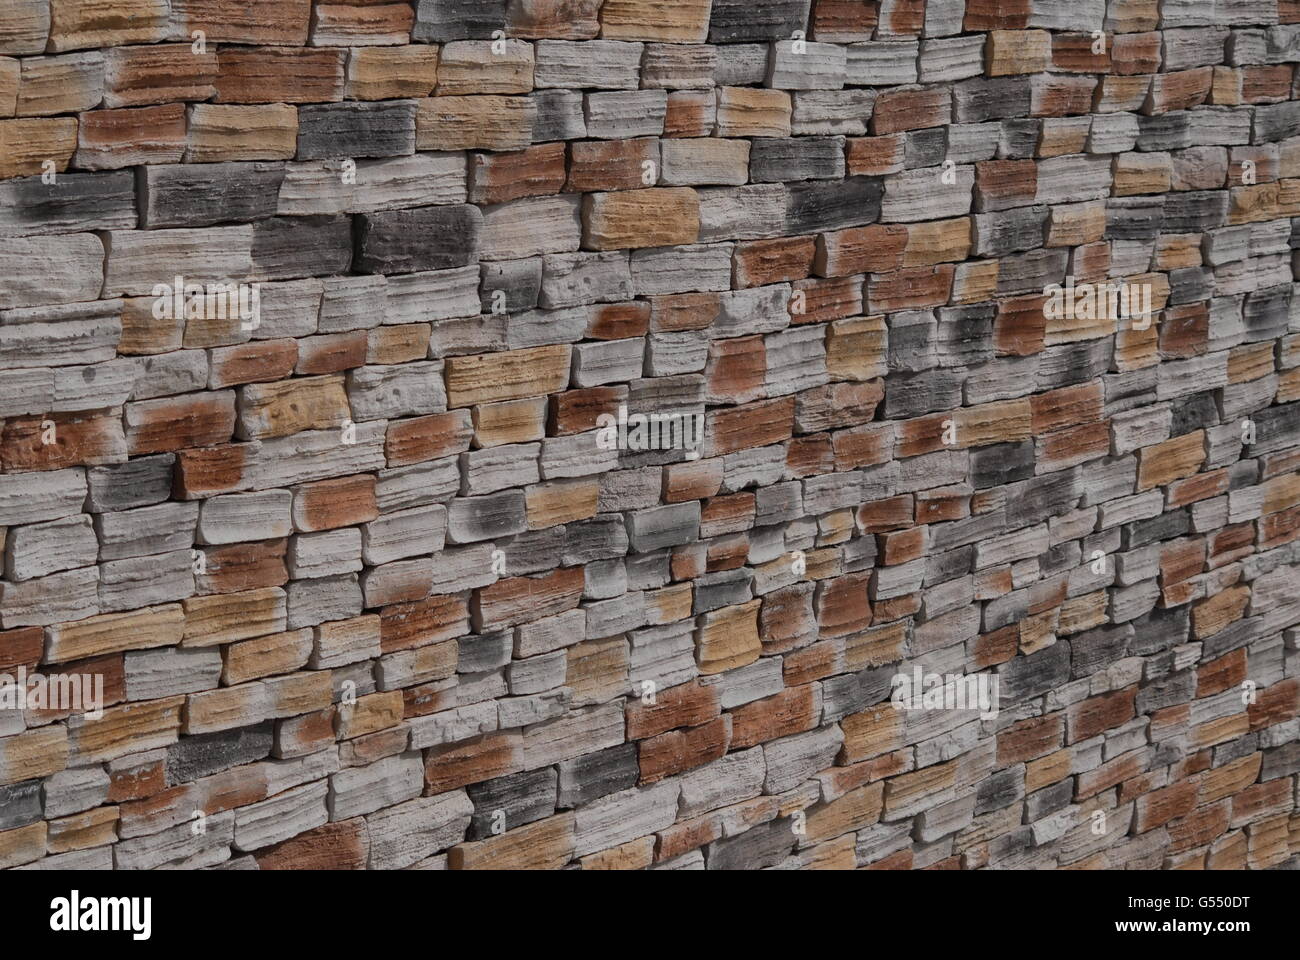 The red bricks. Wall of bricks. Texture of brick wall. The background of bricks. The old bricks. Old masonry. An old wall. Stock Photo